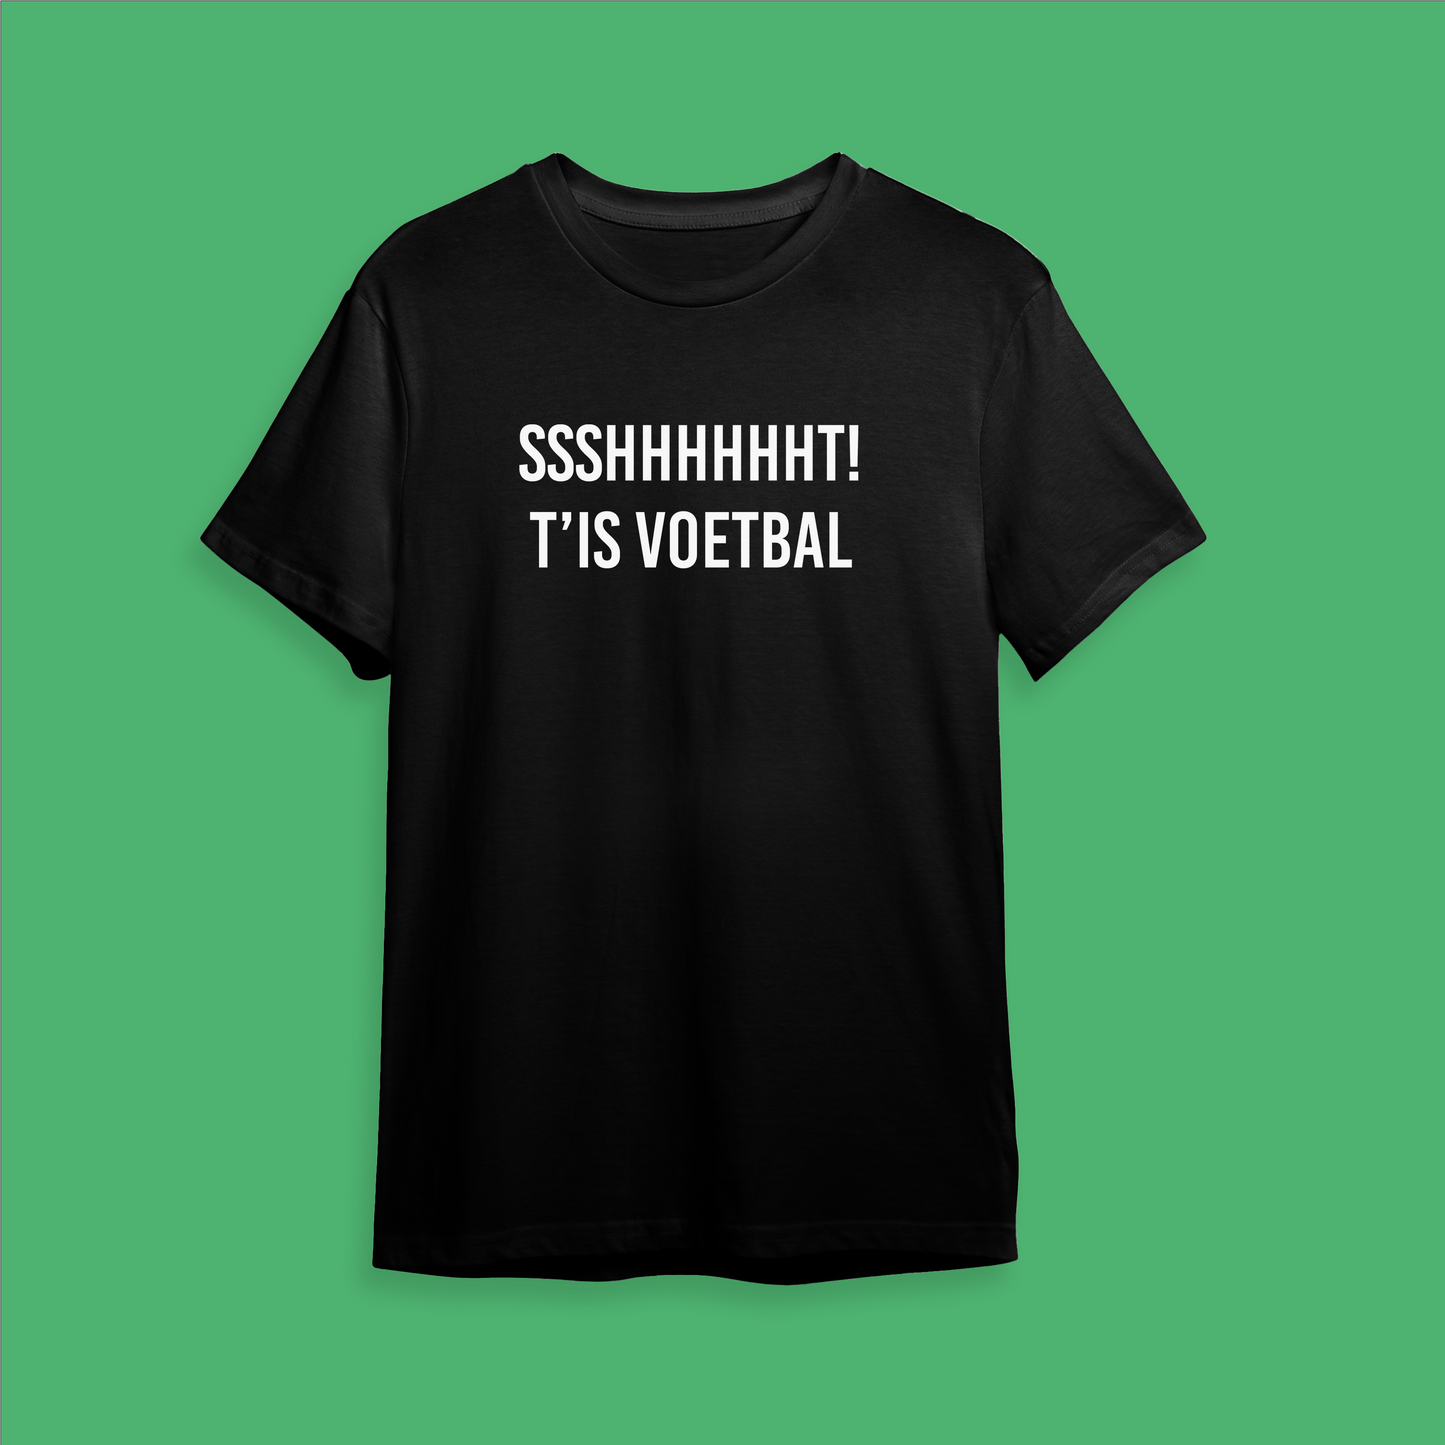 T-shirt - Sshhhhhttt! T'is voetbal